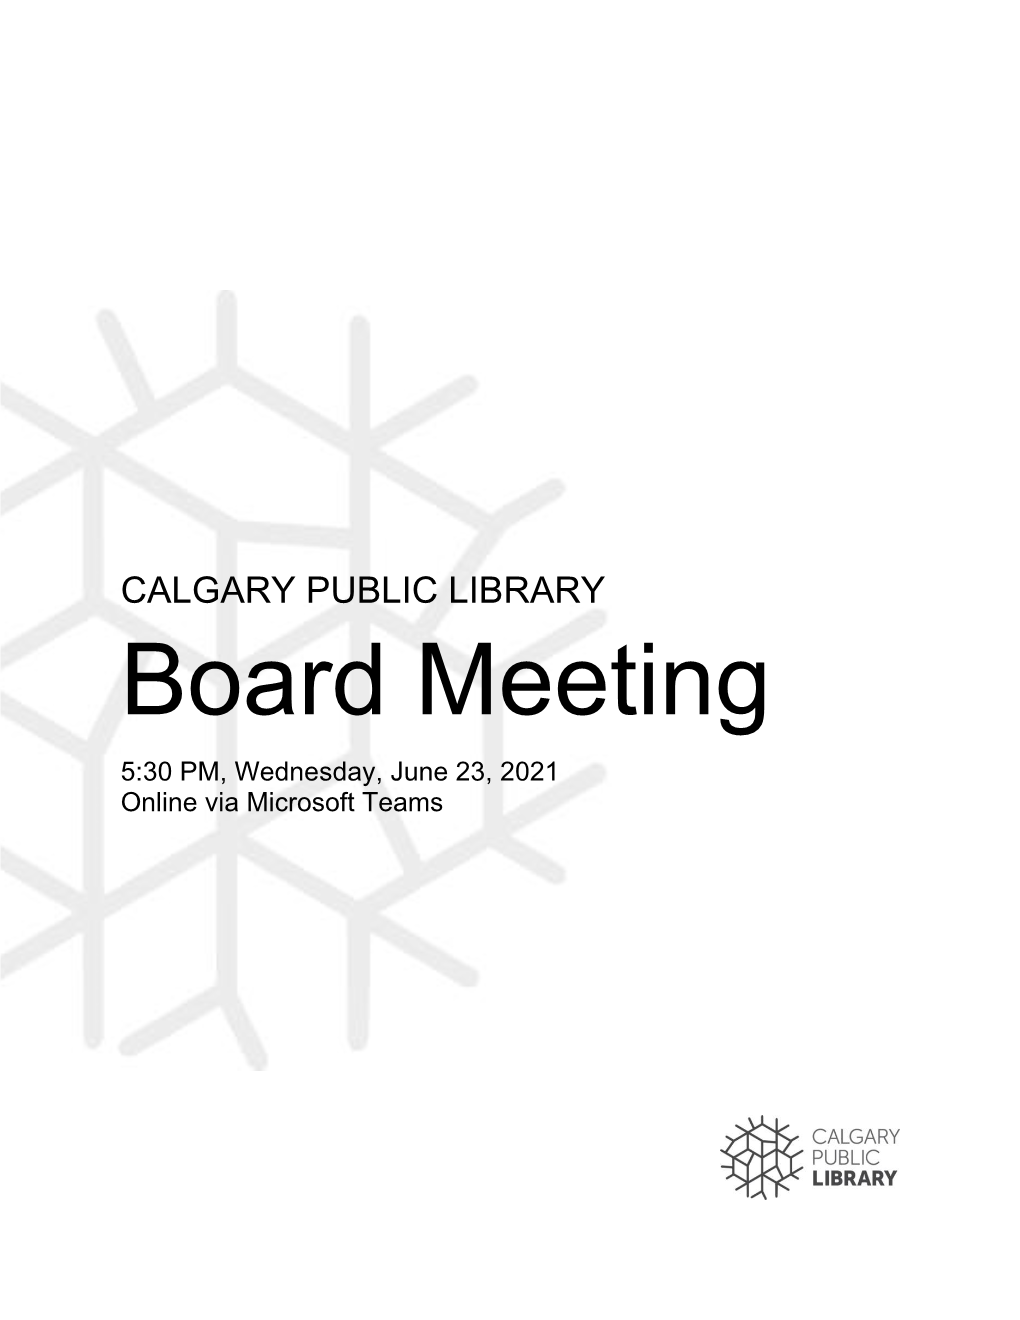 Board Meeting 5:30 PM, Wednesday, June 23, 2021 Online Via Microsoft Teams